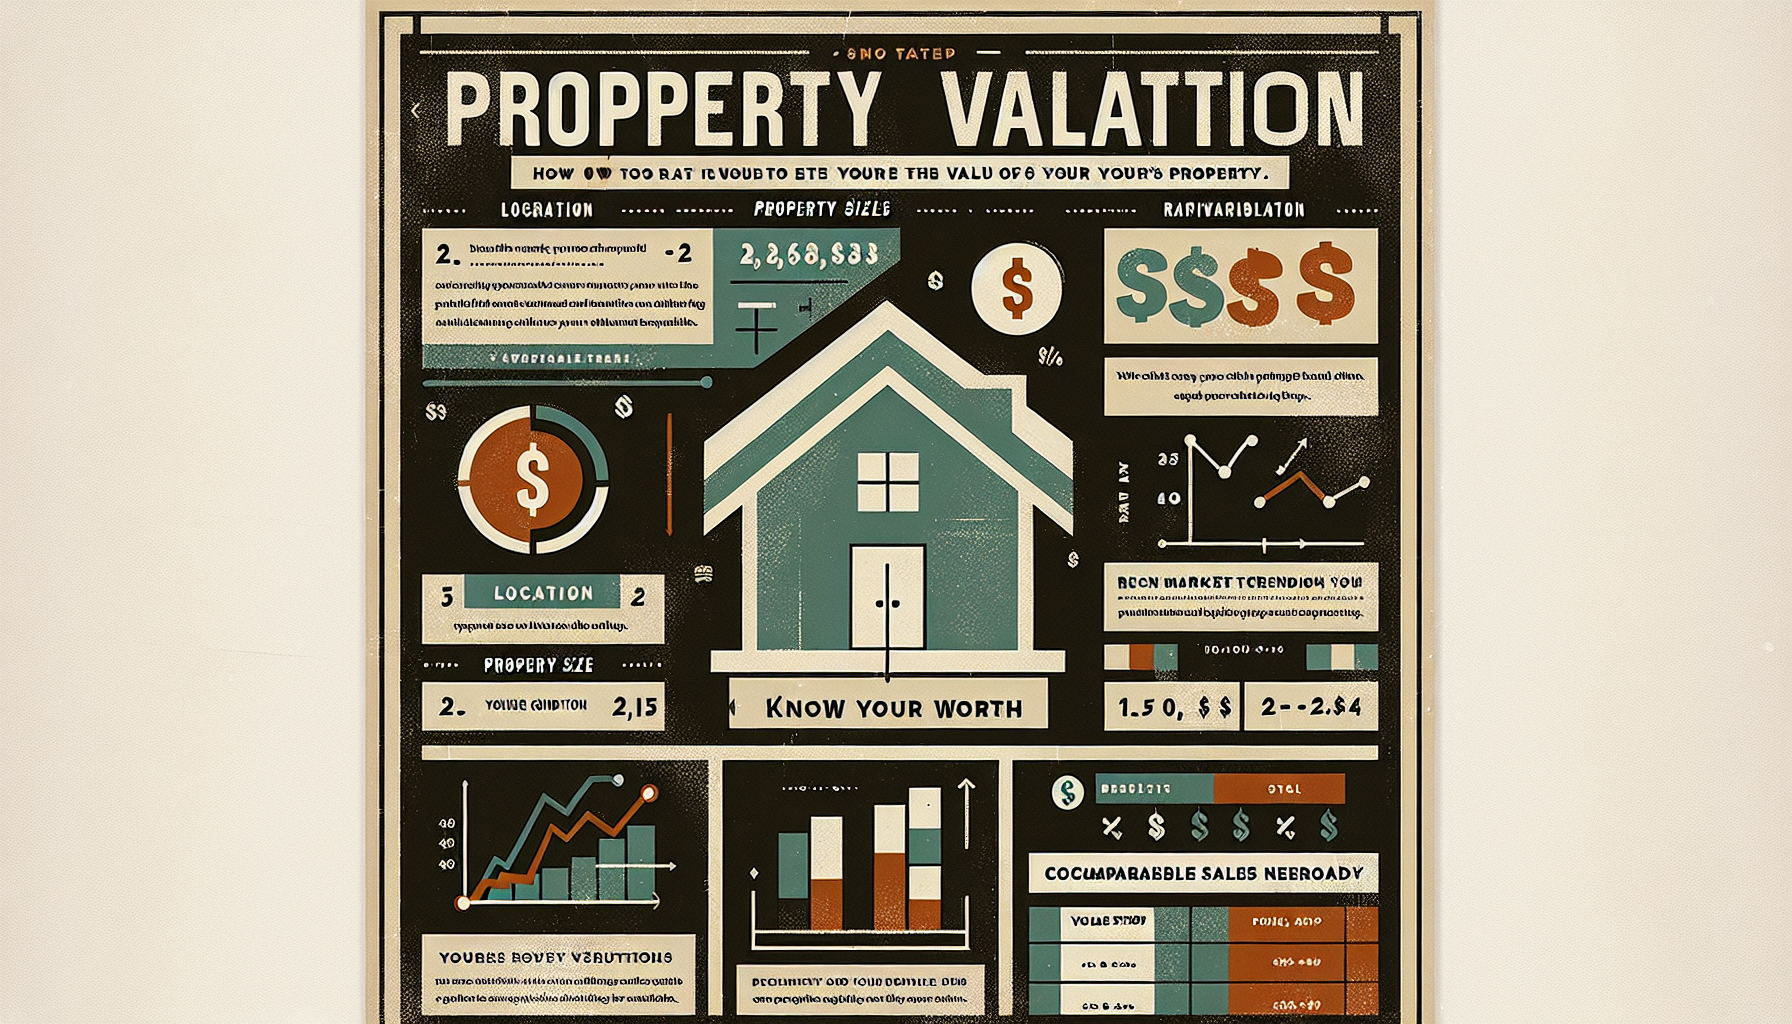 découvrez comment estimer la valeur de votre bien immobilier avec nos conseils pratiques et précis pour une évaluation fiable.